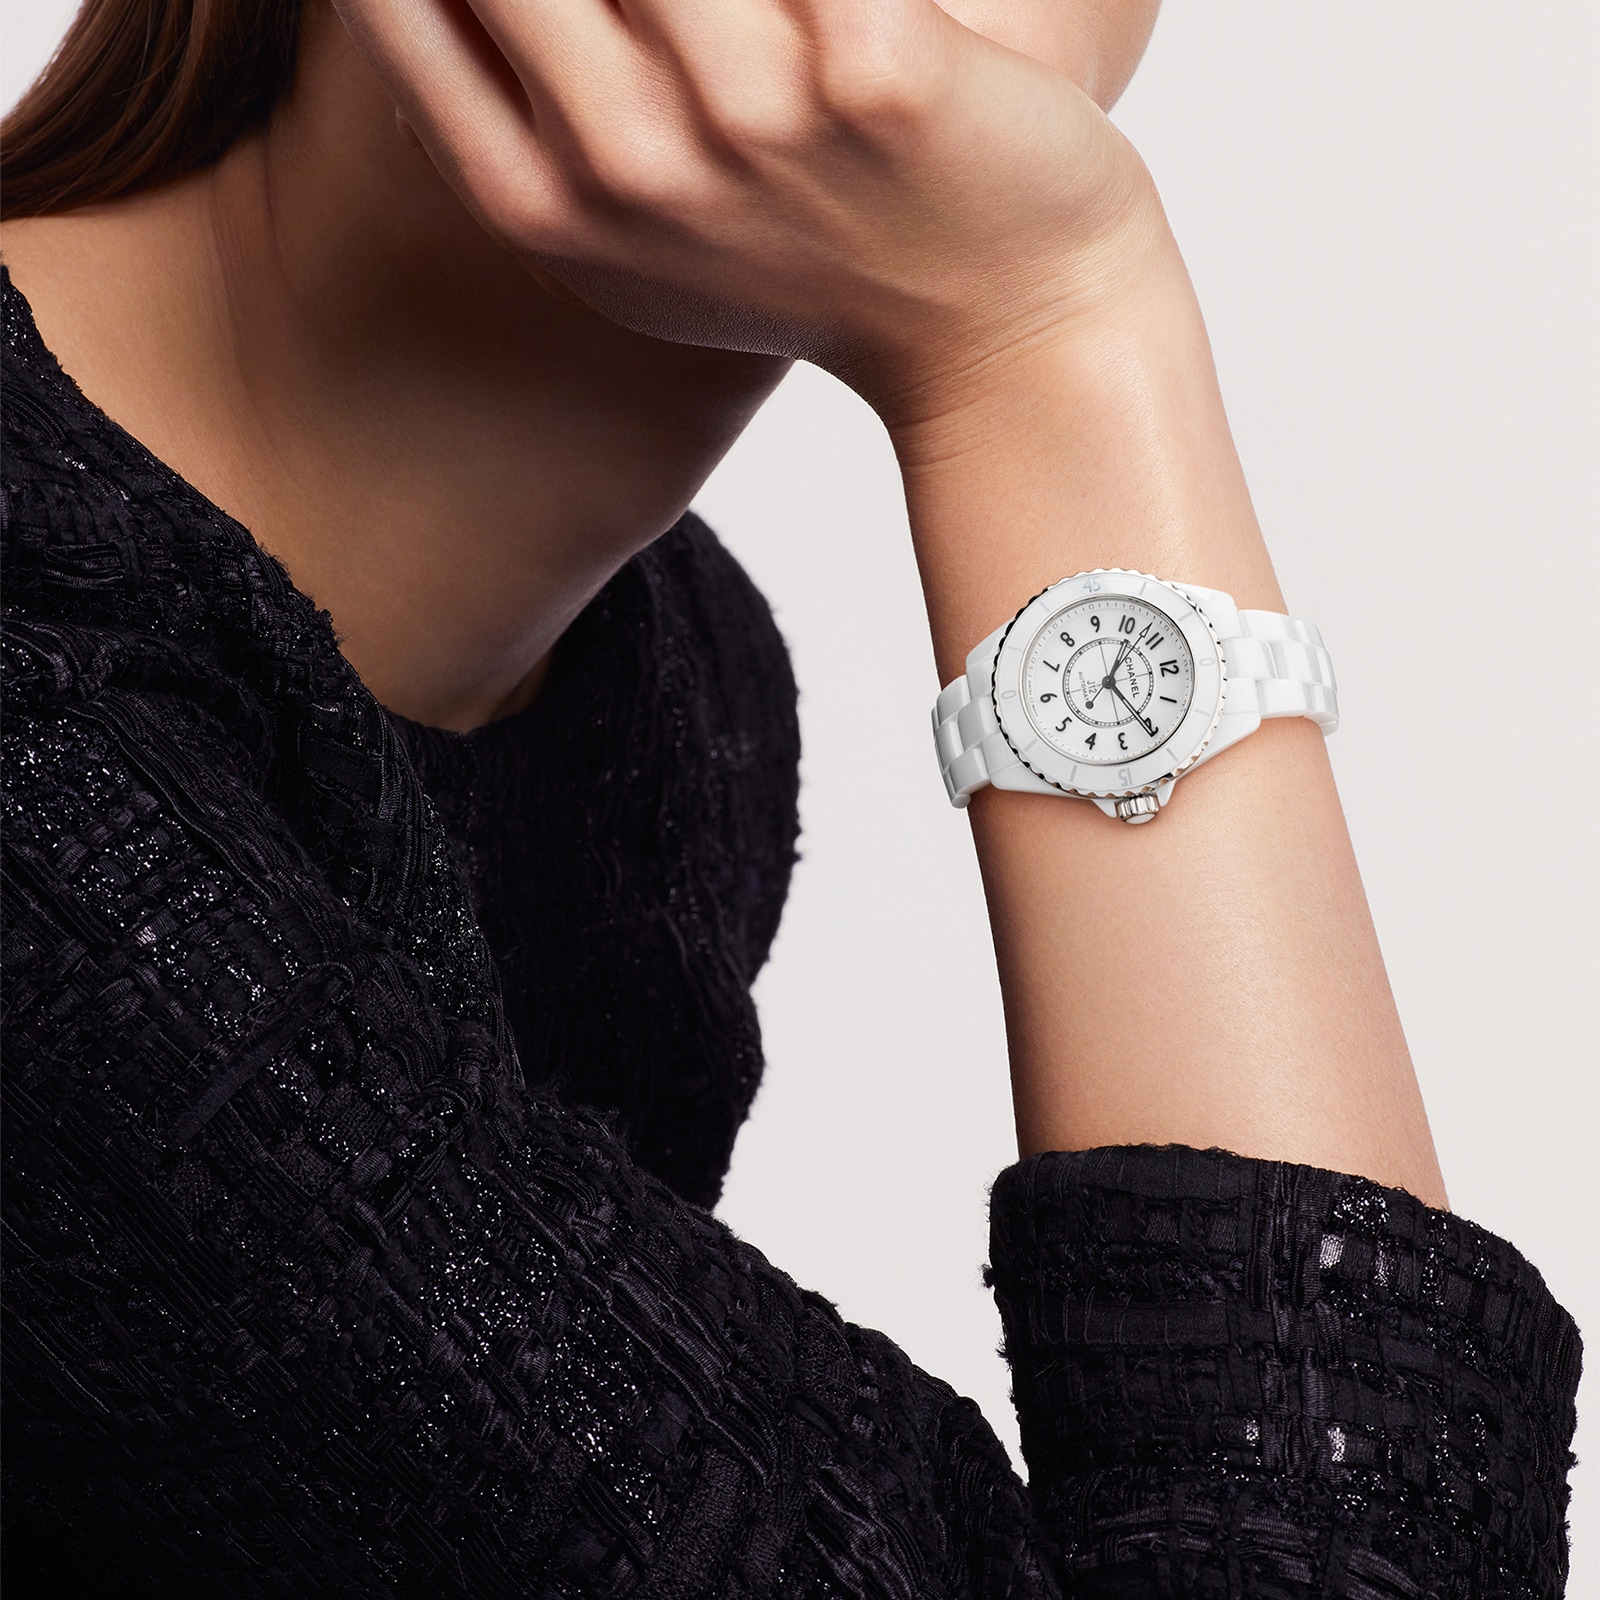 Chanel watch - Men - 1759182033